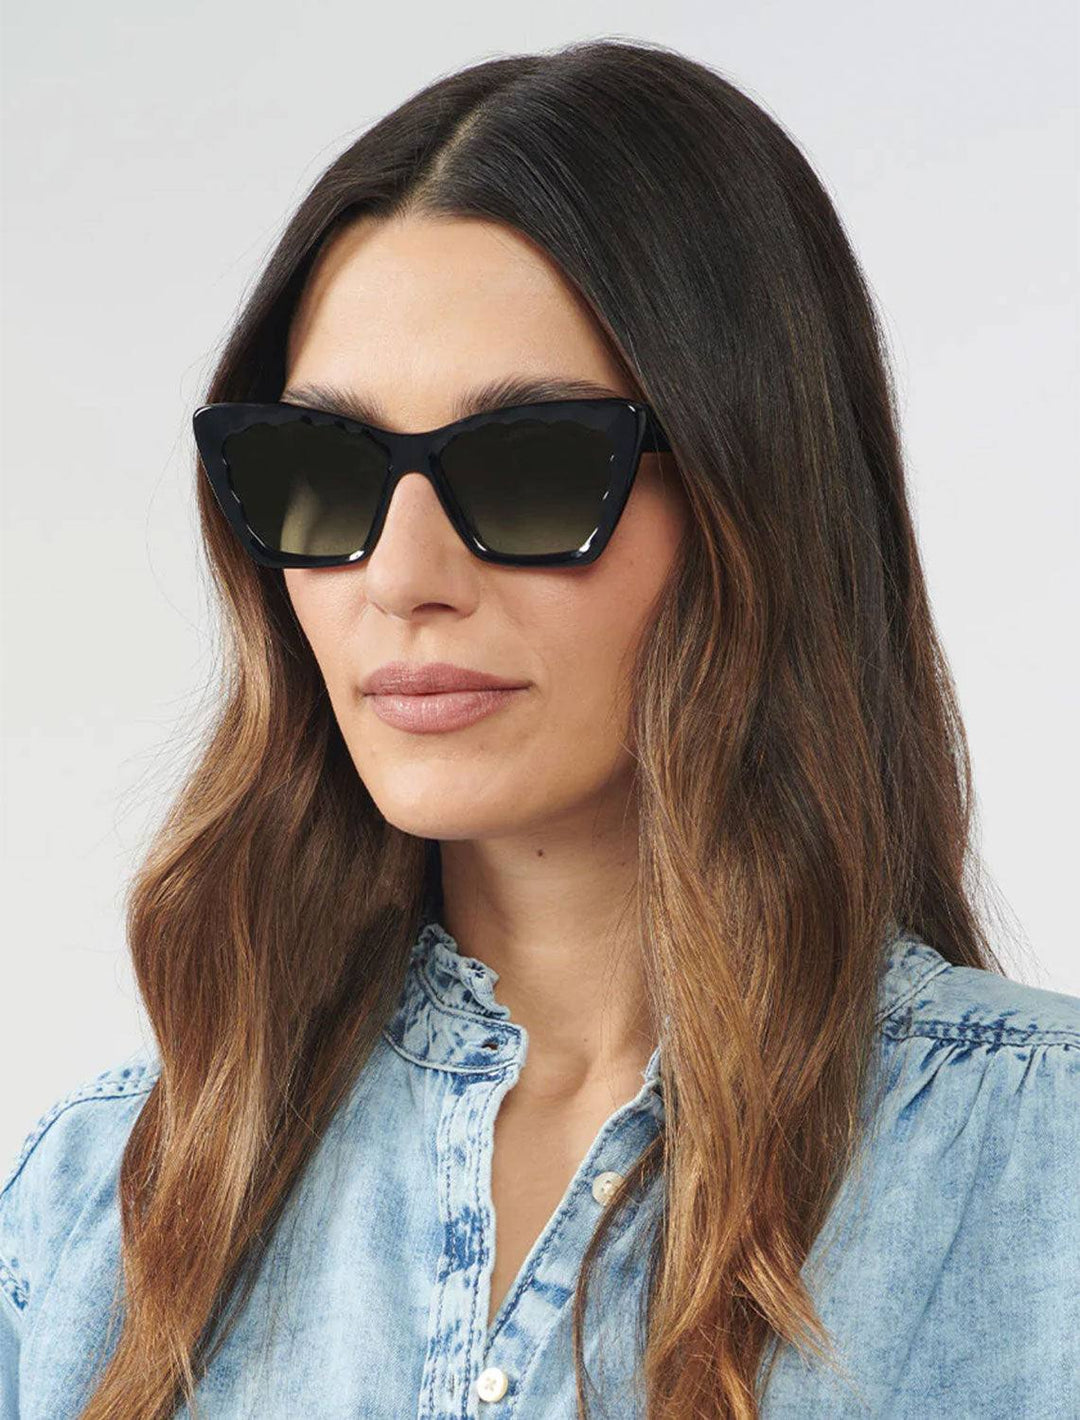 Model wearing Krewe's brigitte sunglasses in black and black crystal.